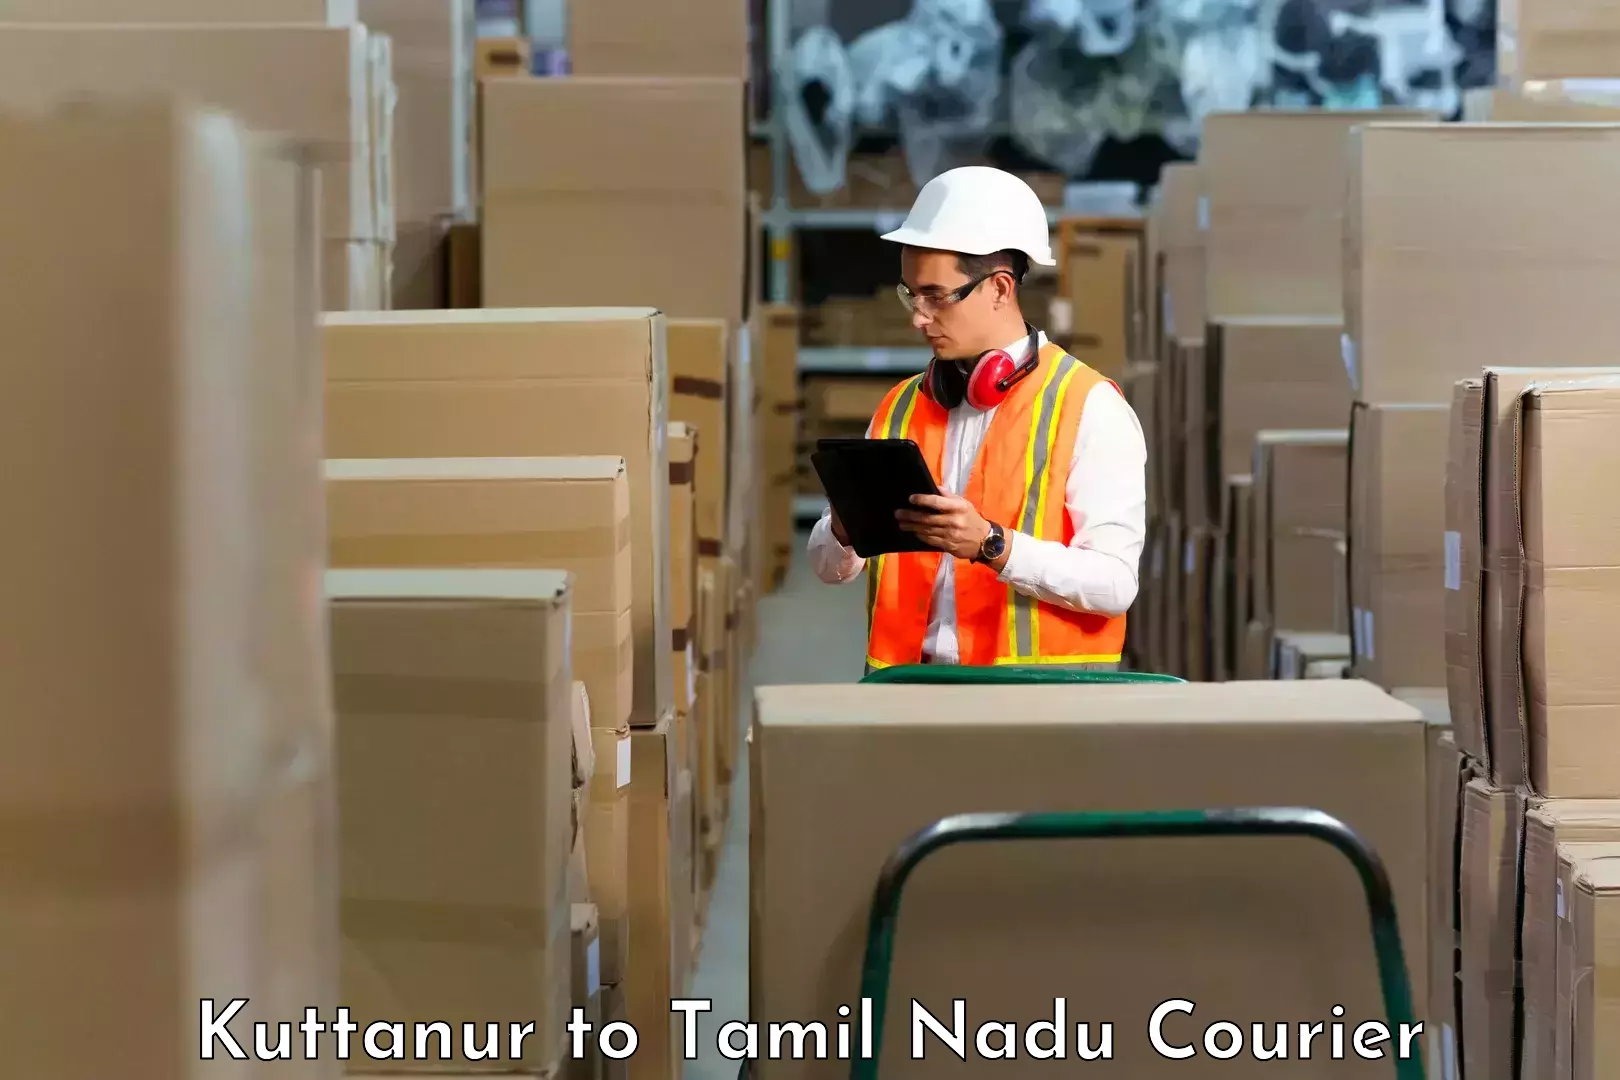 Advanced courier platforms Kuttanur to Tamil Nadu